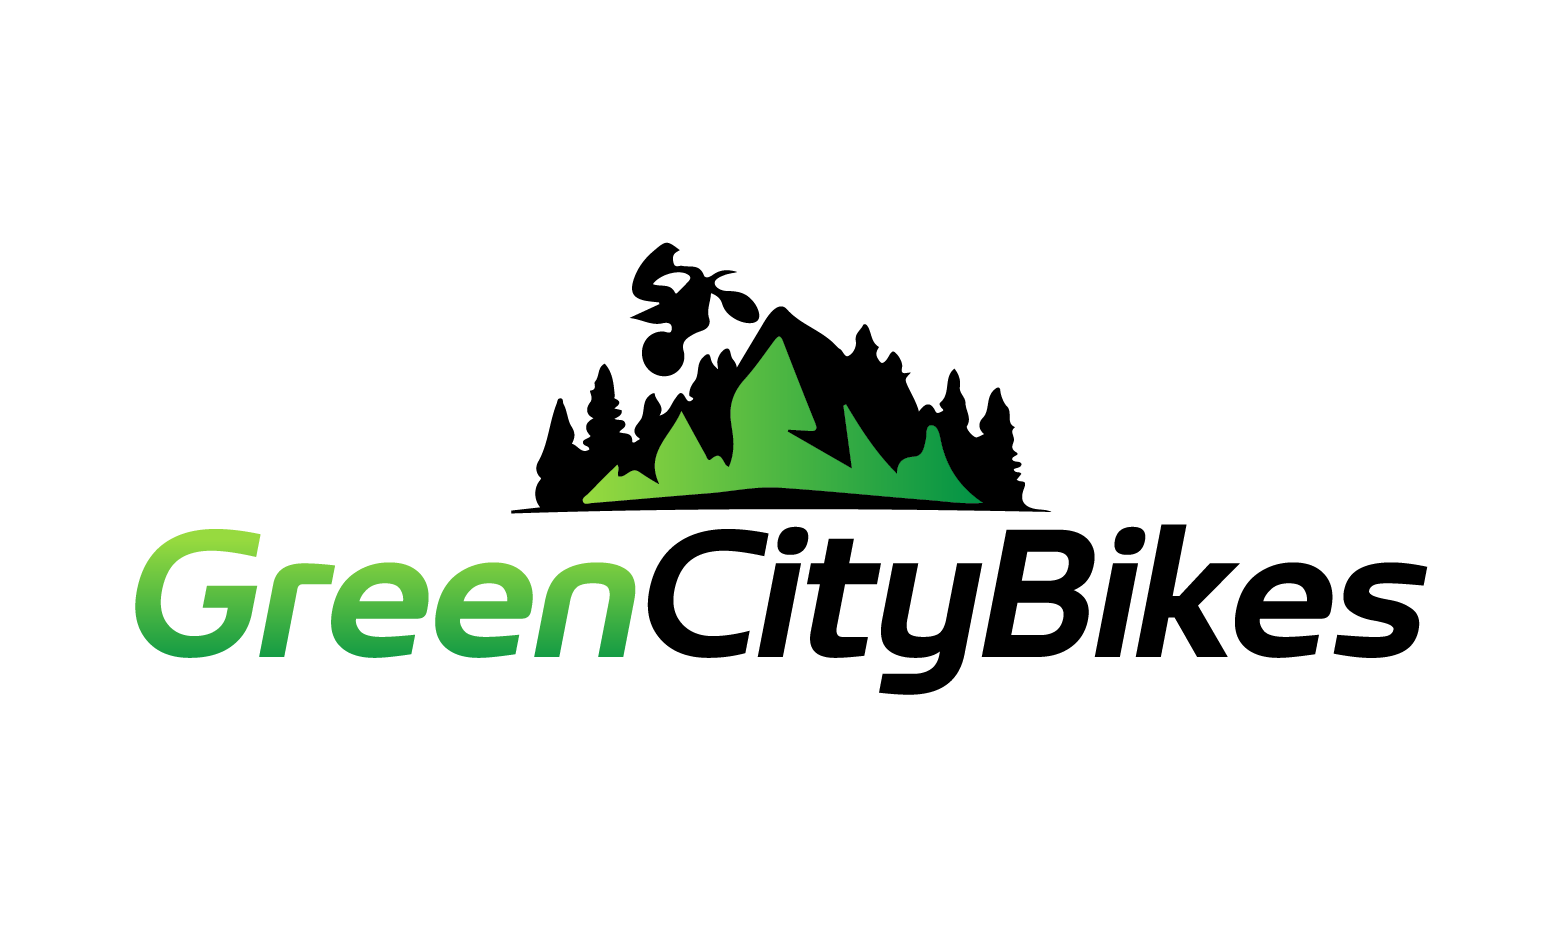 GreenCityBikes.com - Creative brandable domain for sale